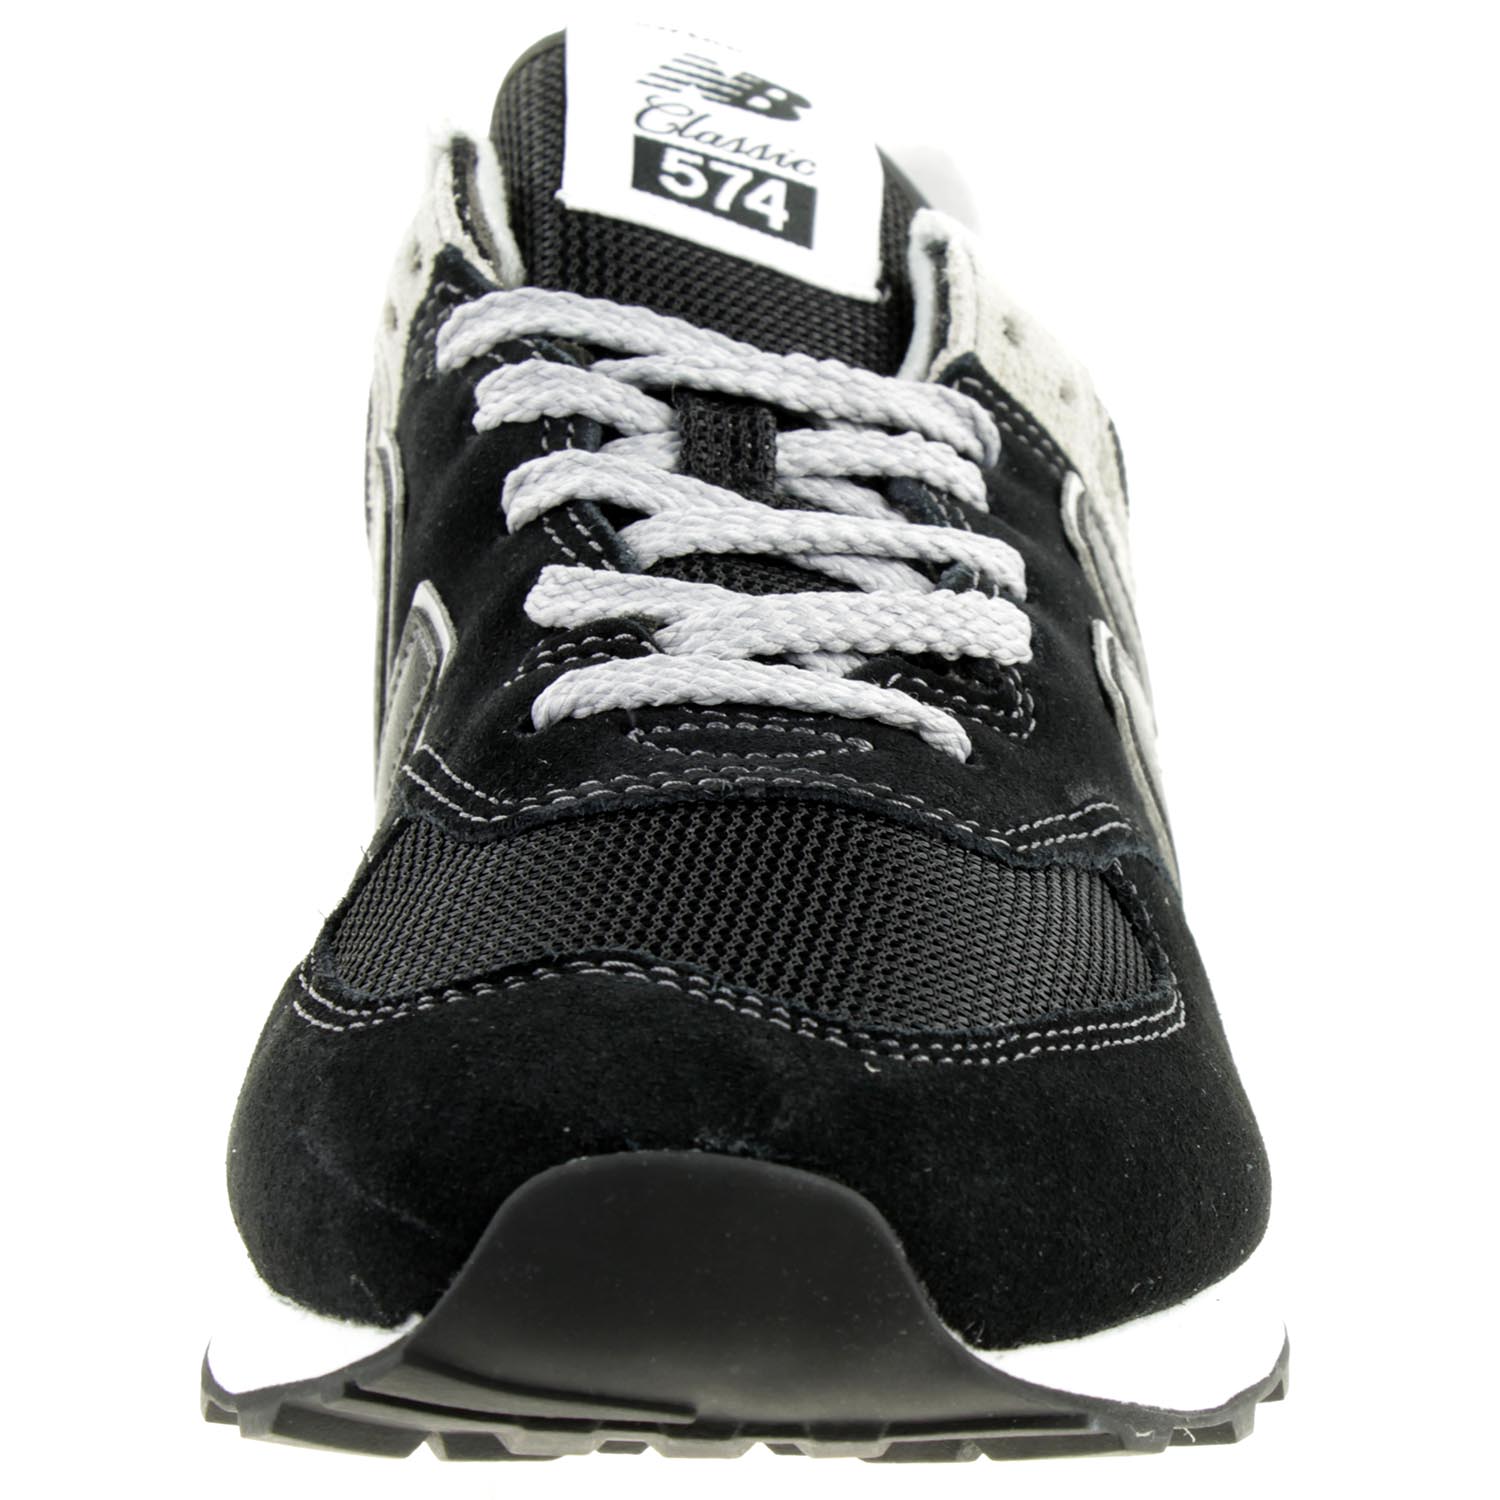 New Balance ML 574 EGK Classic Sneaker Herren Schuhe schwarz